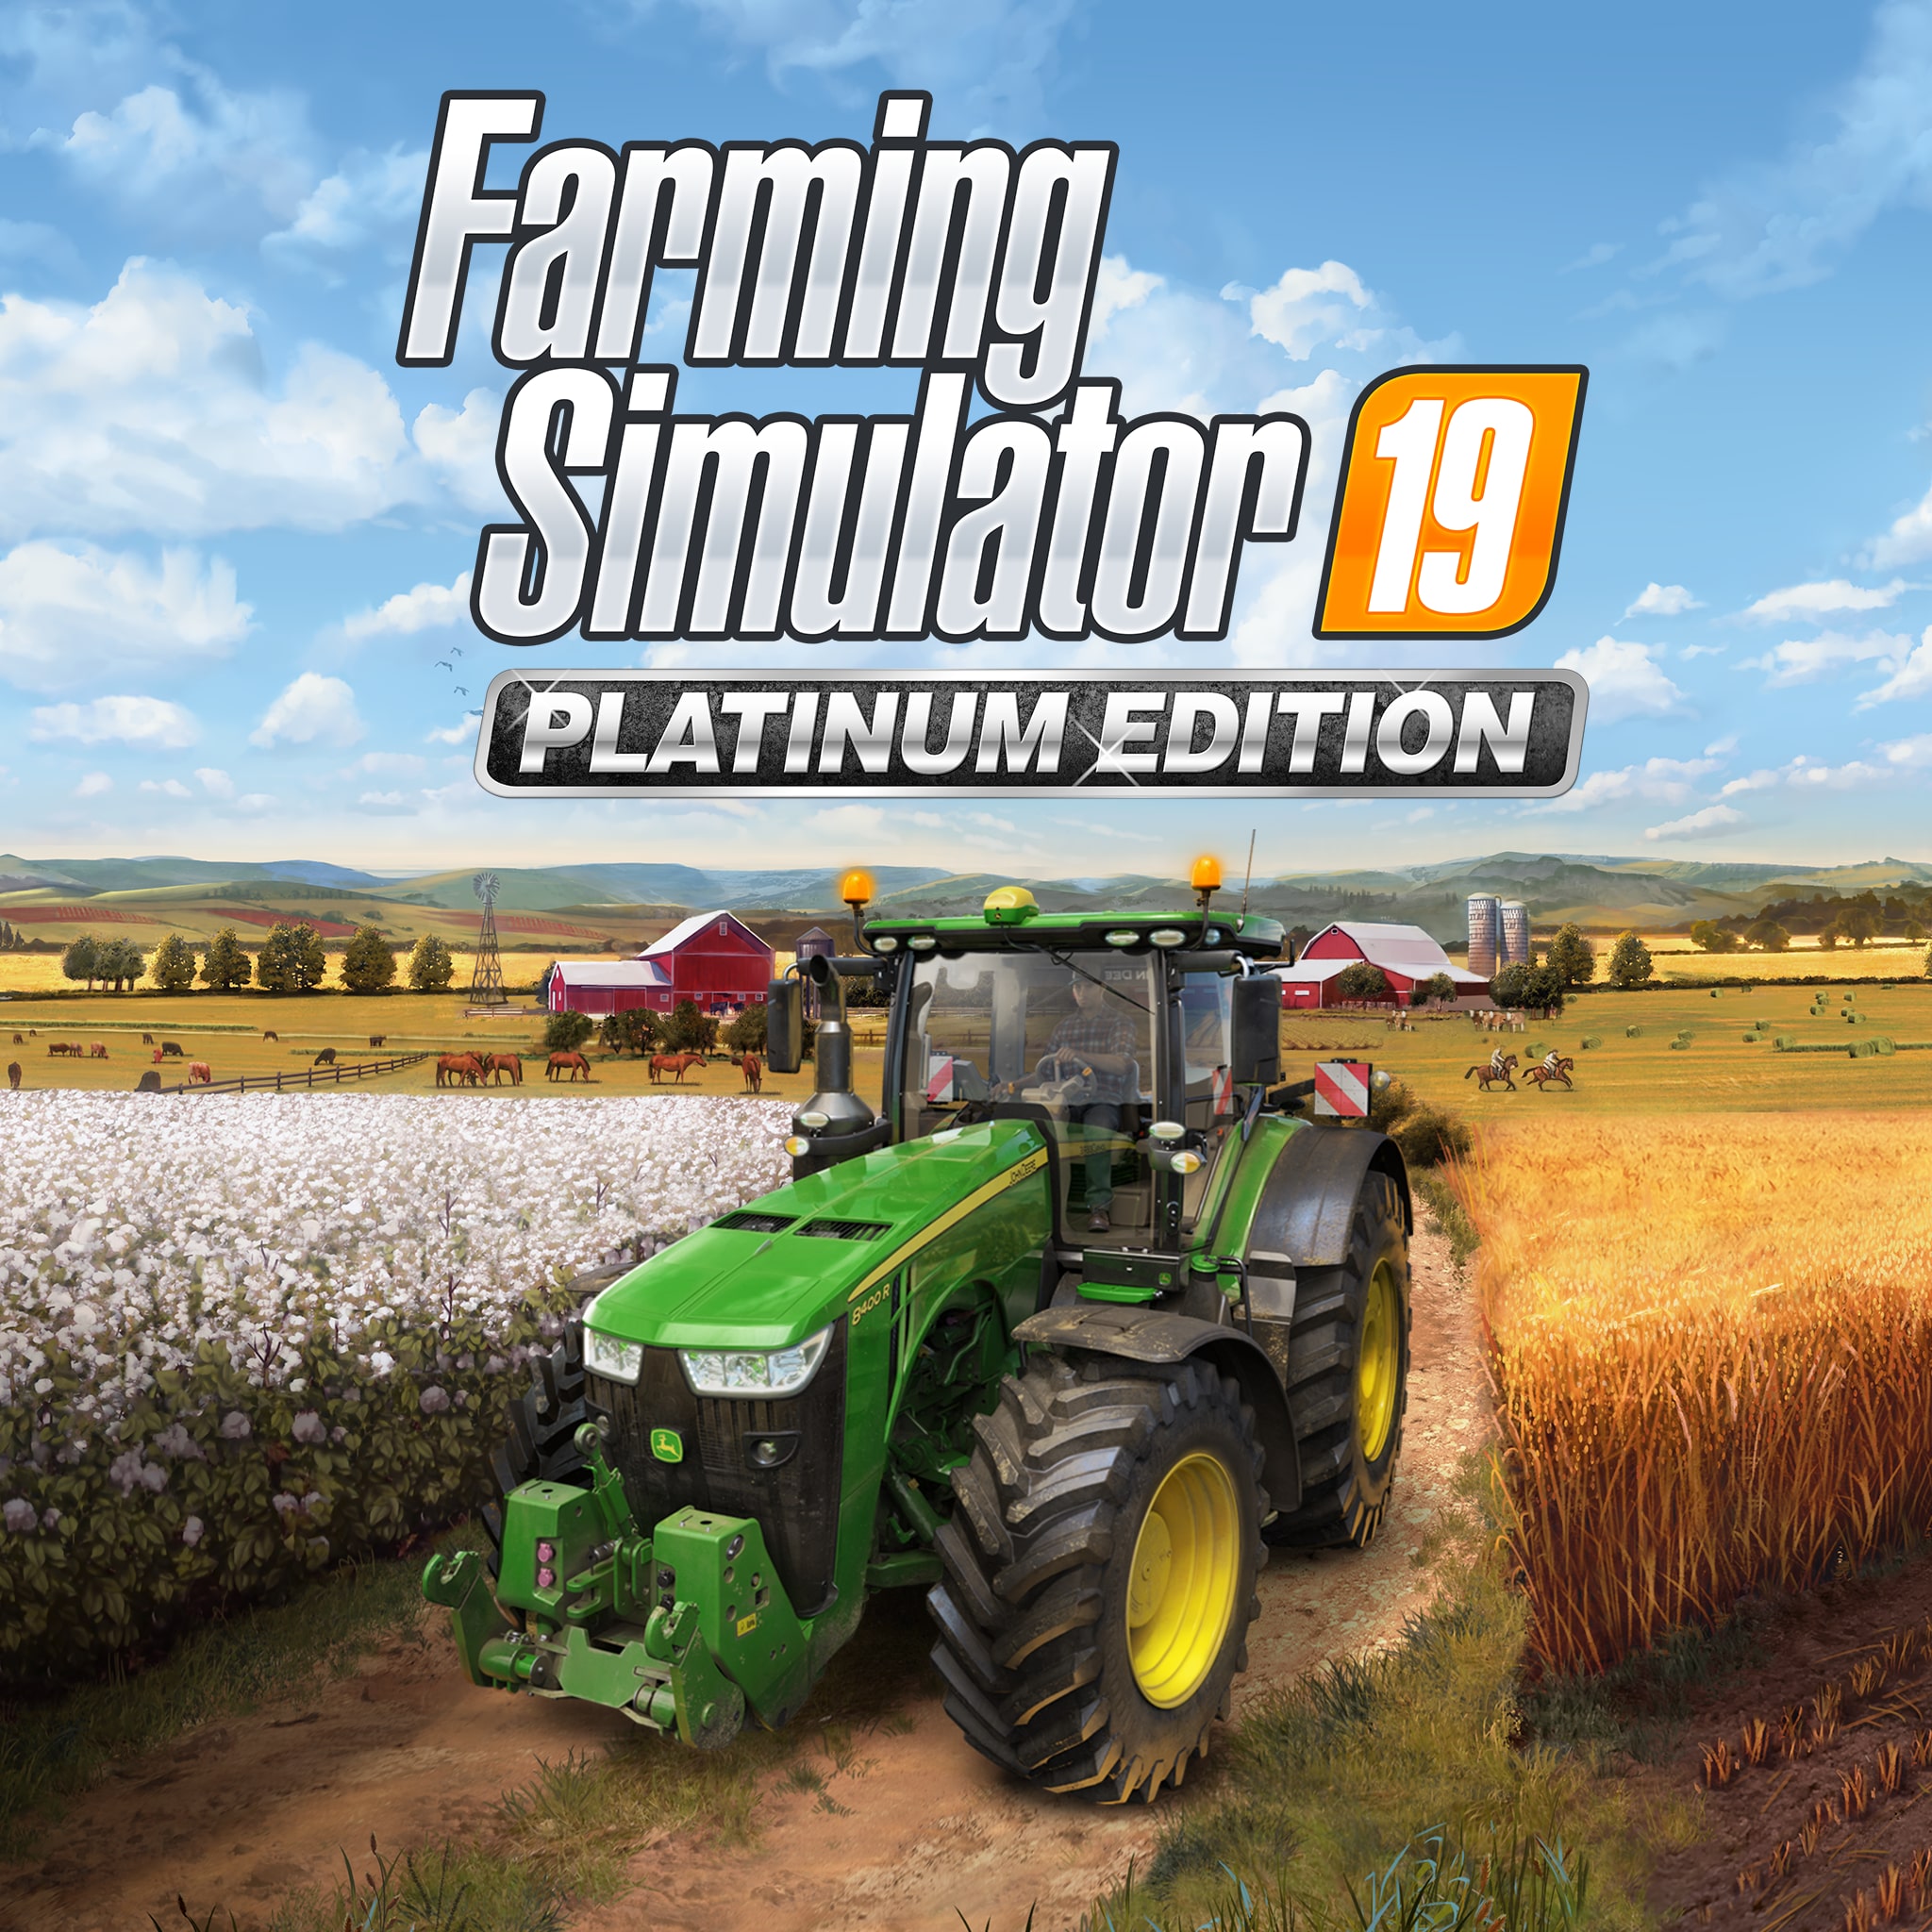 Kracht Robijn krassen Farming Simulator 19